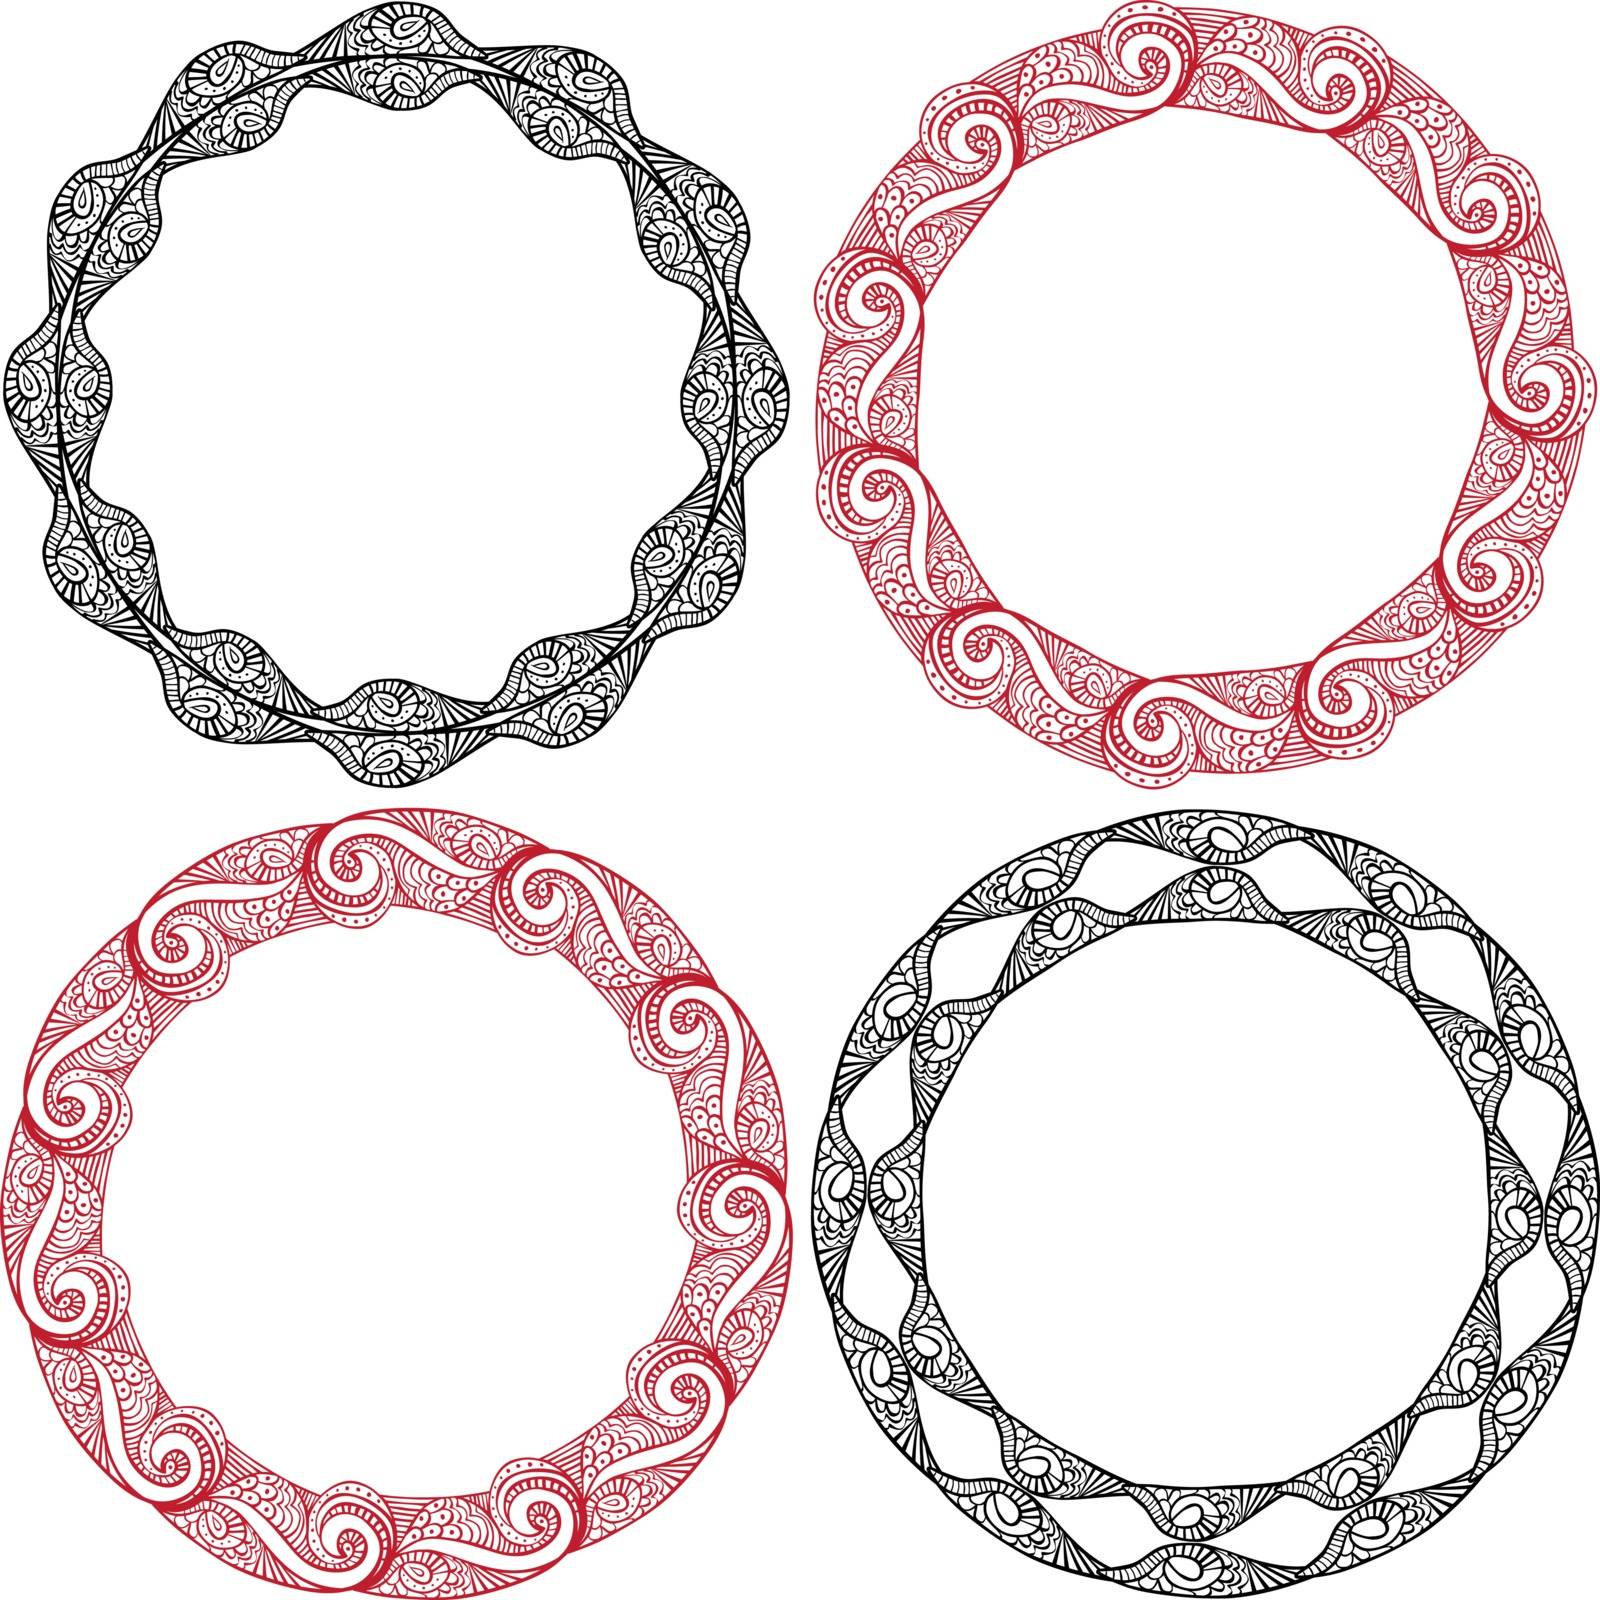 Decorative circles by nahhan